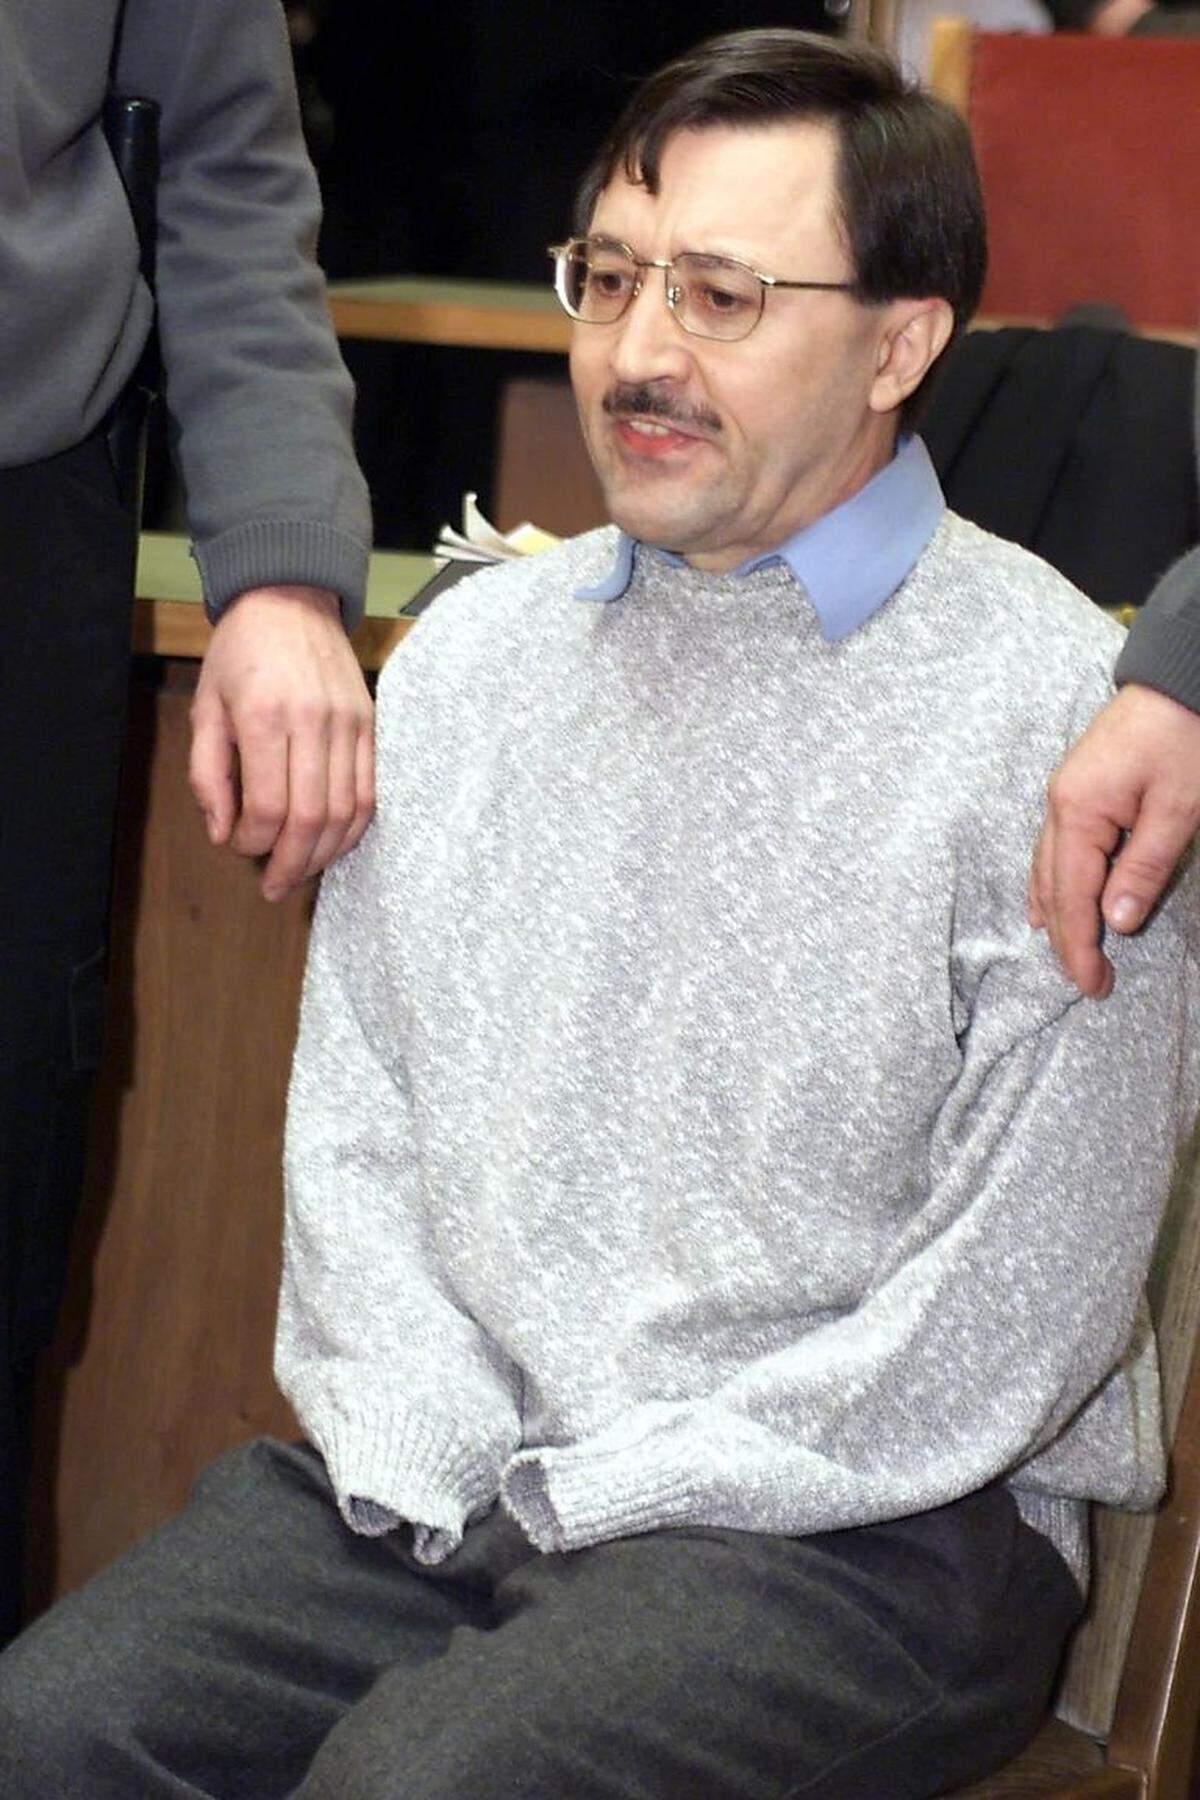 Fuchs, Urheber weiterer Rohr- und Briefbomben mit zahlreichen Schwerverletzten, wird 1997 gefasst und begeht 2000 in Haft Selbstmord.Bild: Fuchs im Februar 1999 vor Gericht.